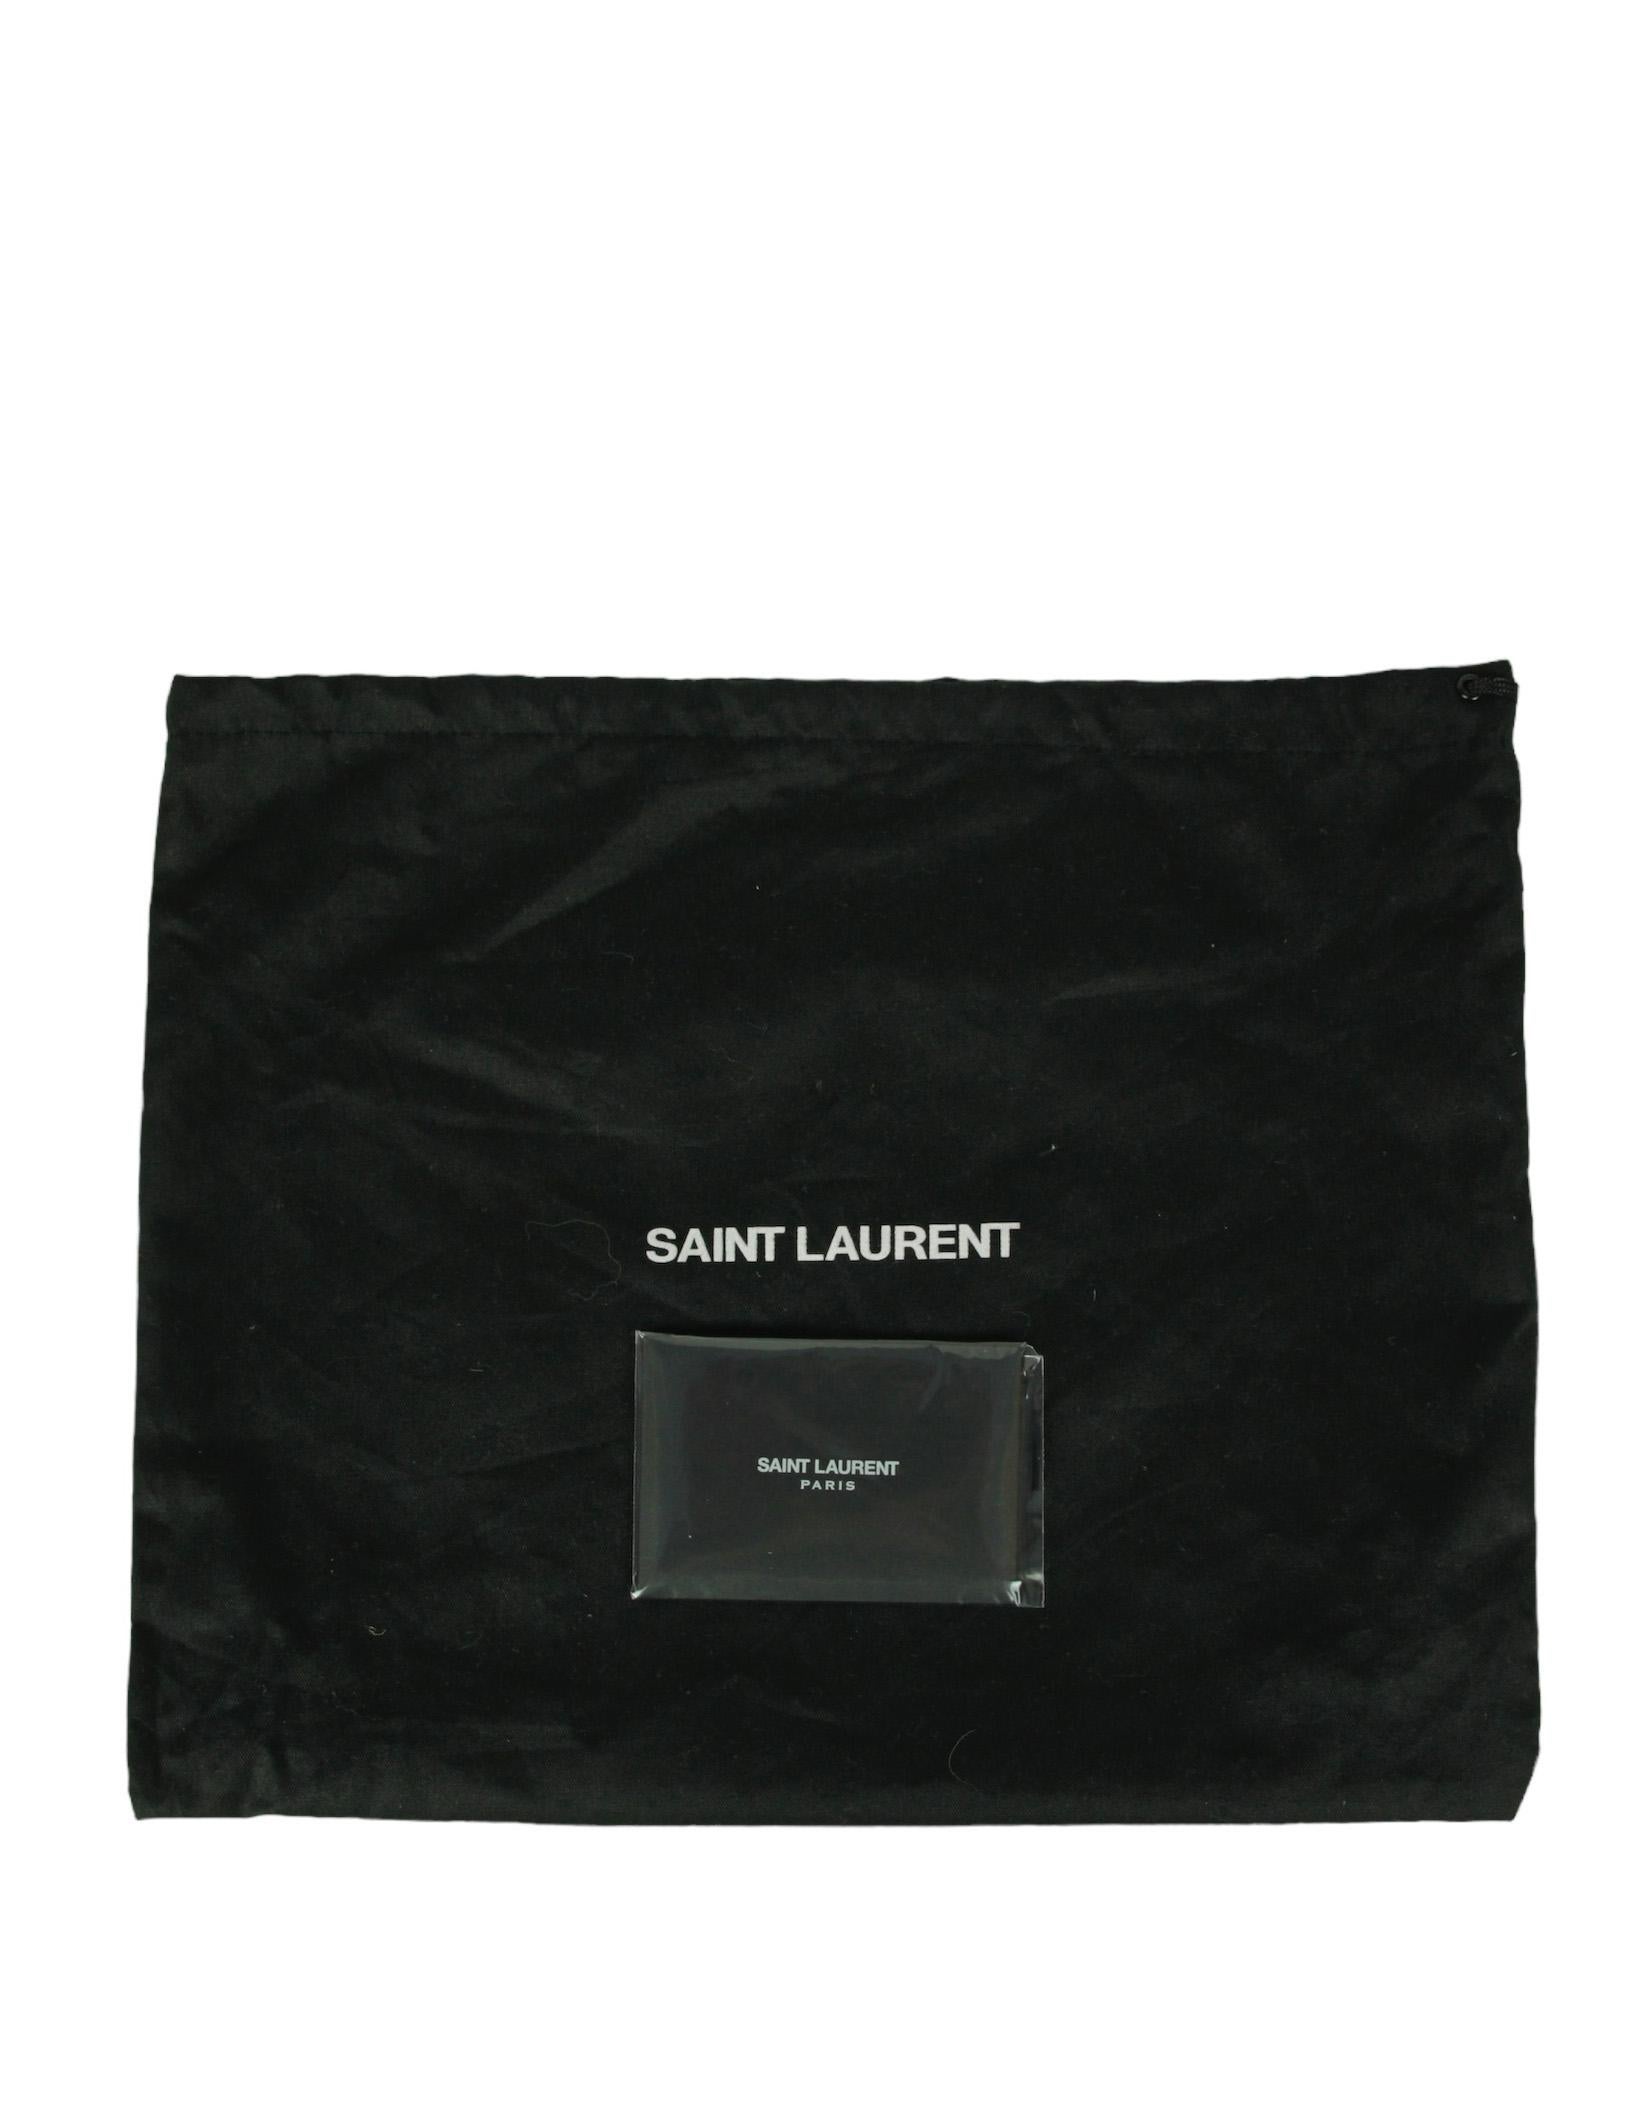 Saint Laurent Black Calfskin Matelasse Monogram Lou Camera Bag For Sale 5